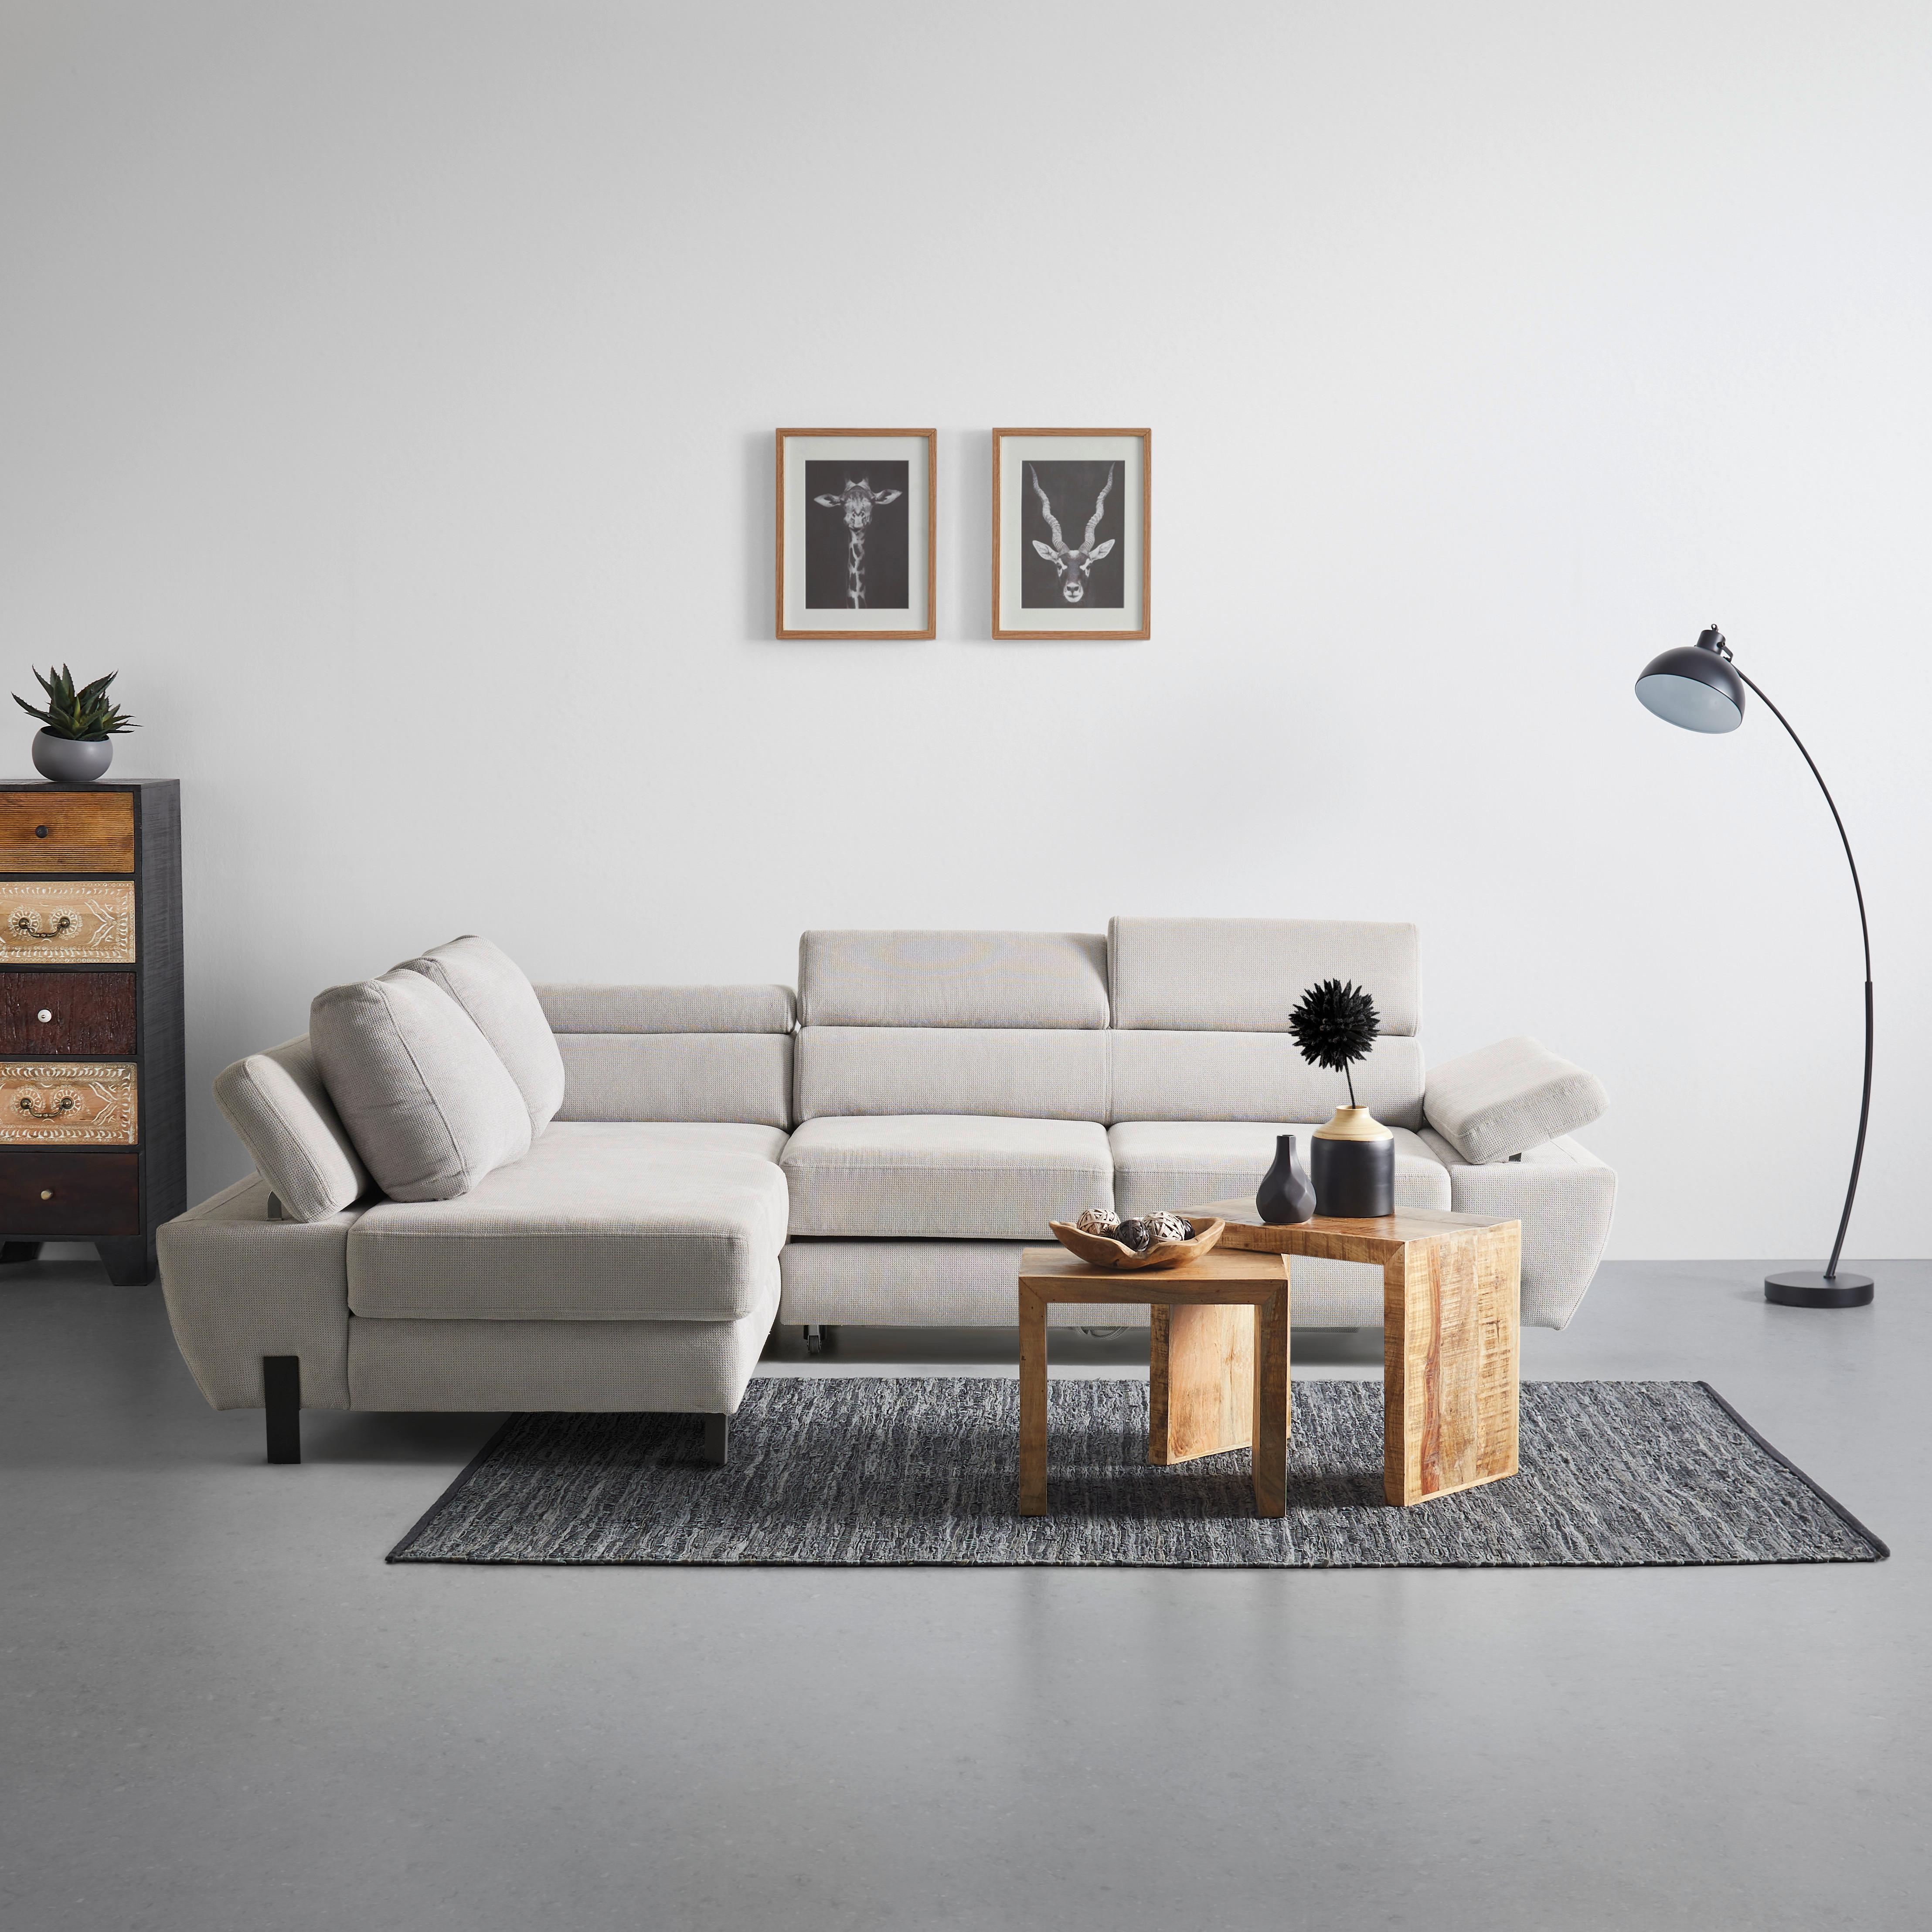 Sedežna Garnitura Molina Mini, Z Ležiščem - črna/svetlo siva, Moderno, kovina/tekstil (189/90/277cm) - Premium Living